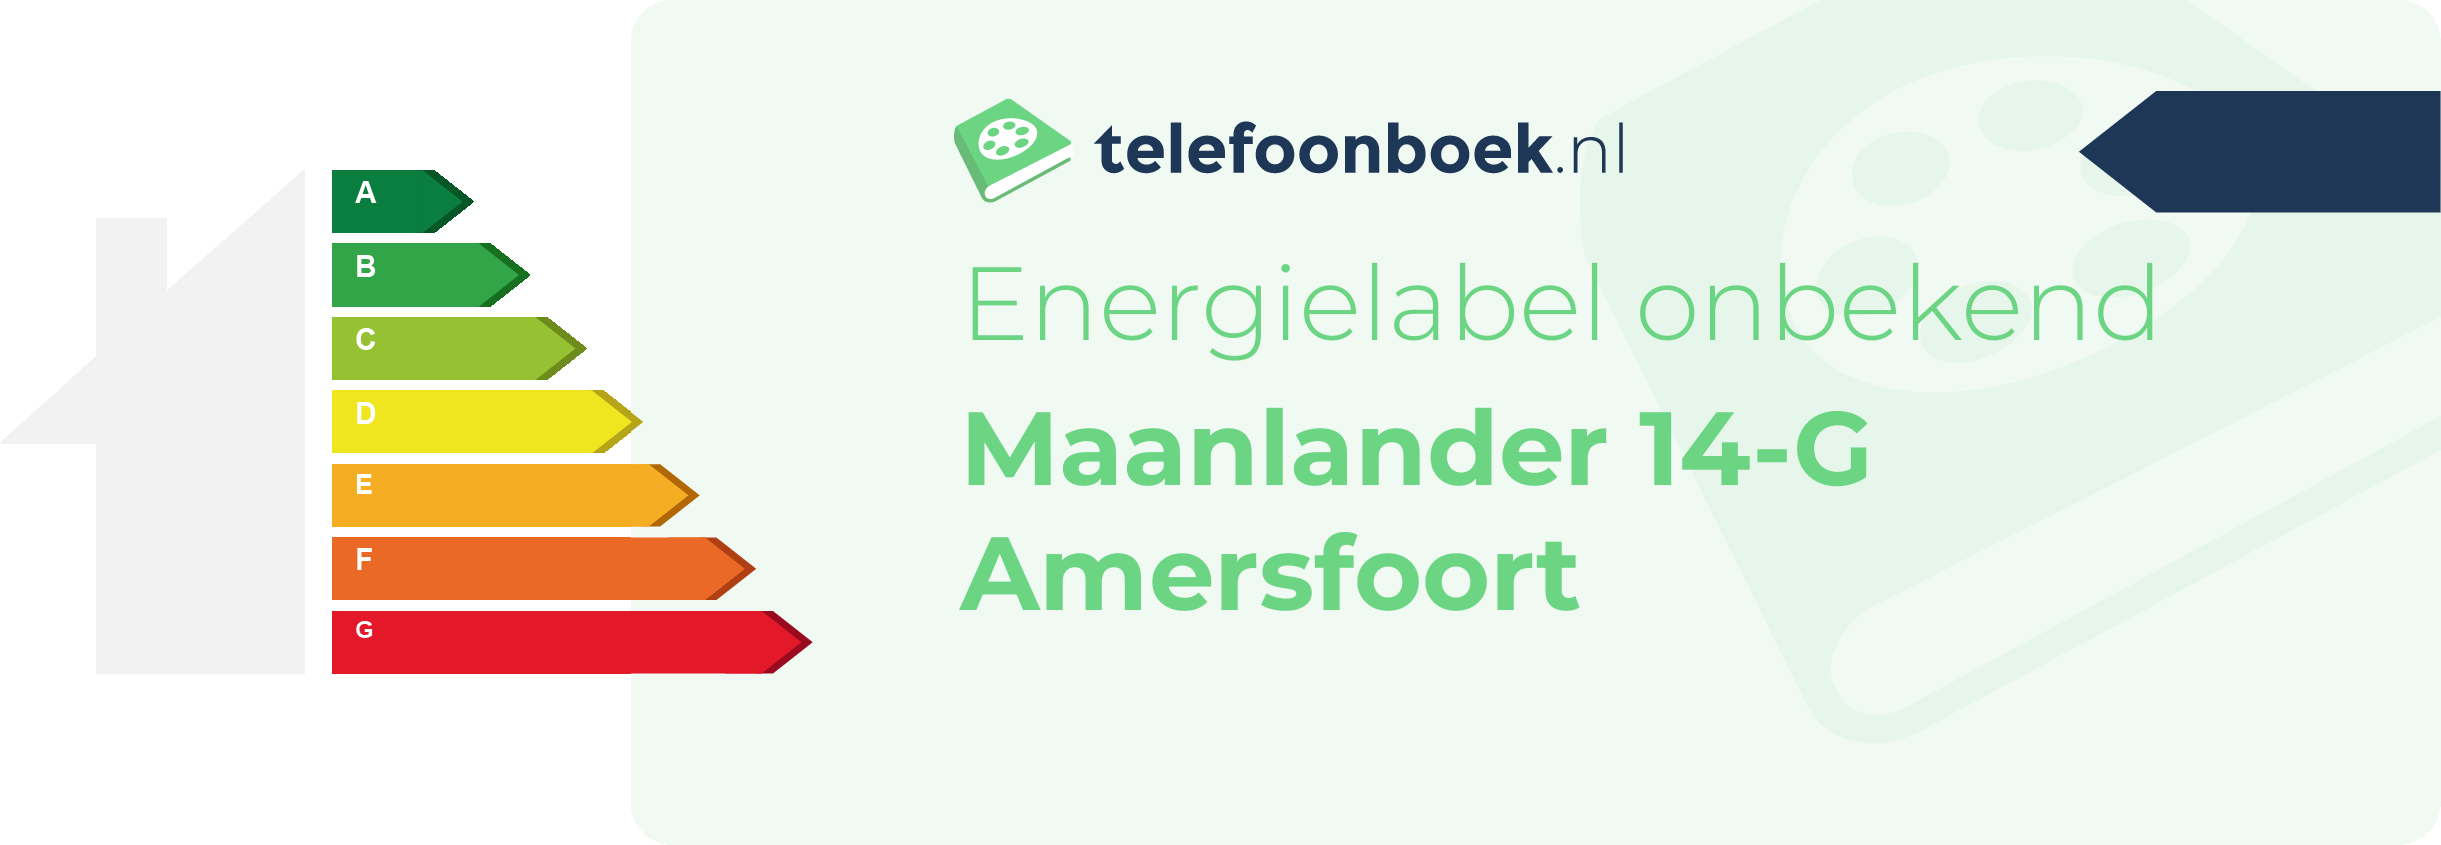 Energielabel Maanlander 14-G Amersfoort